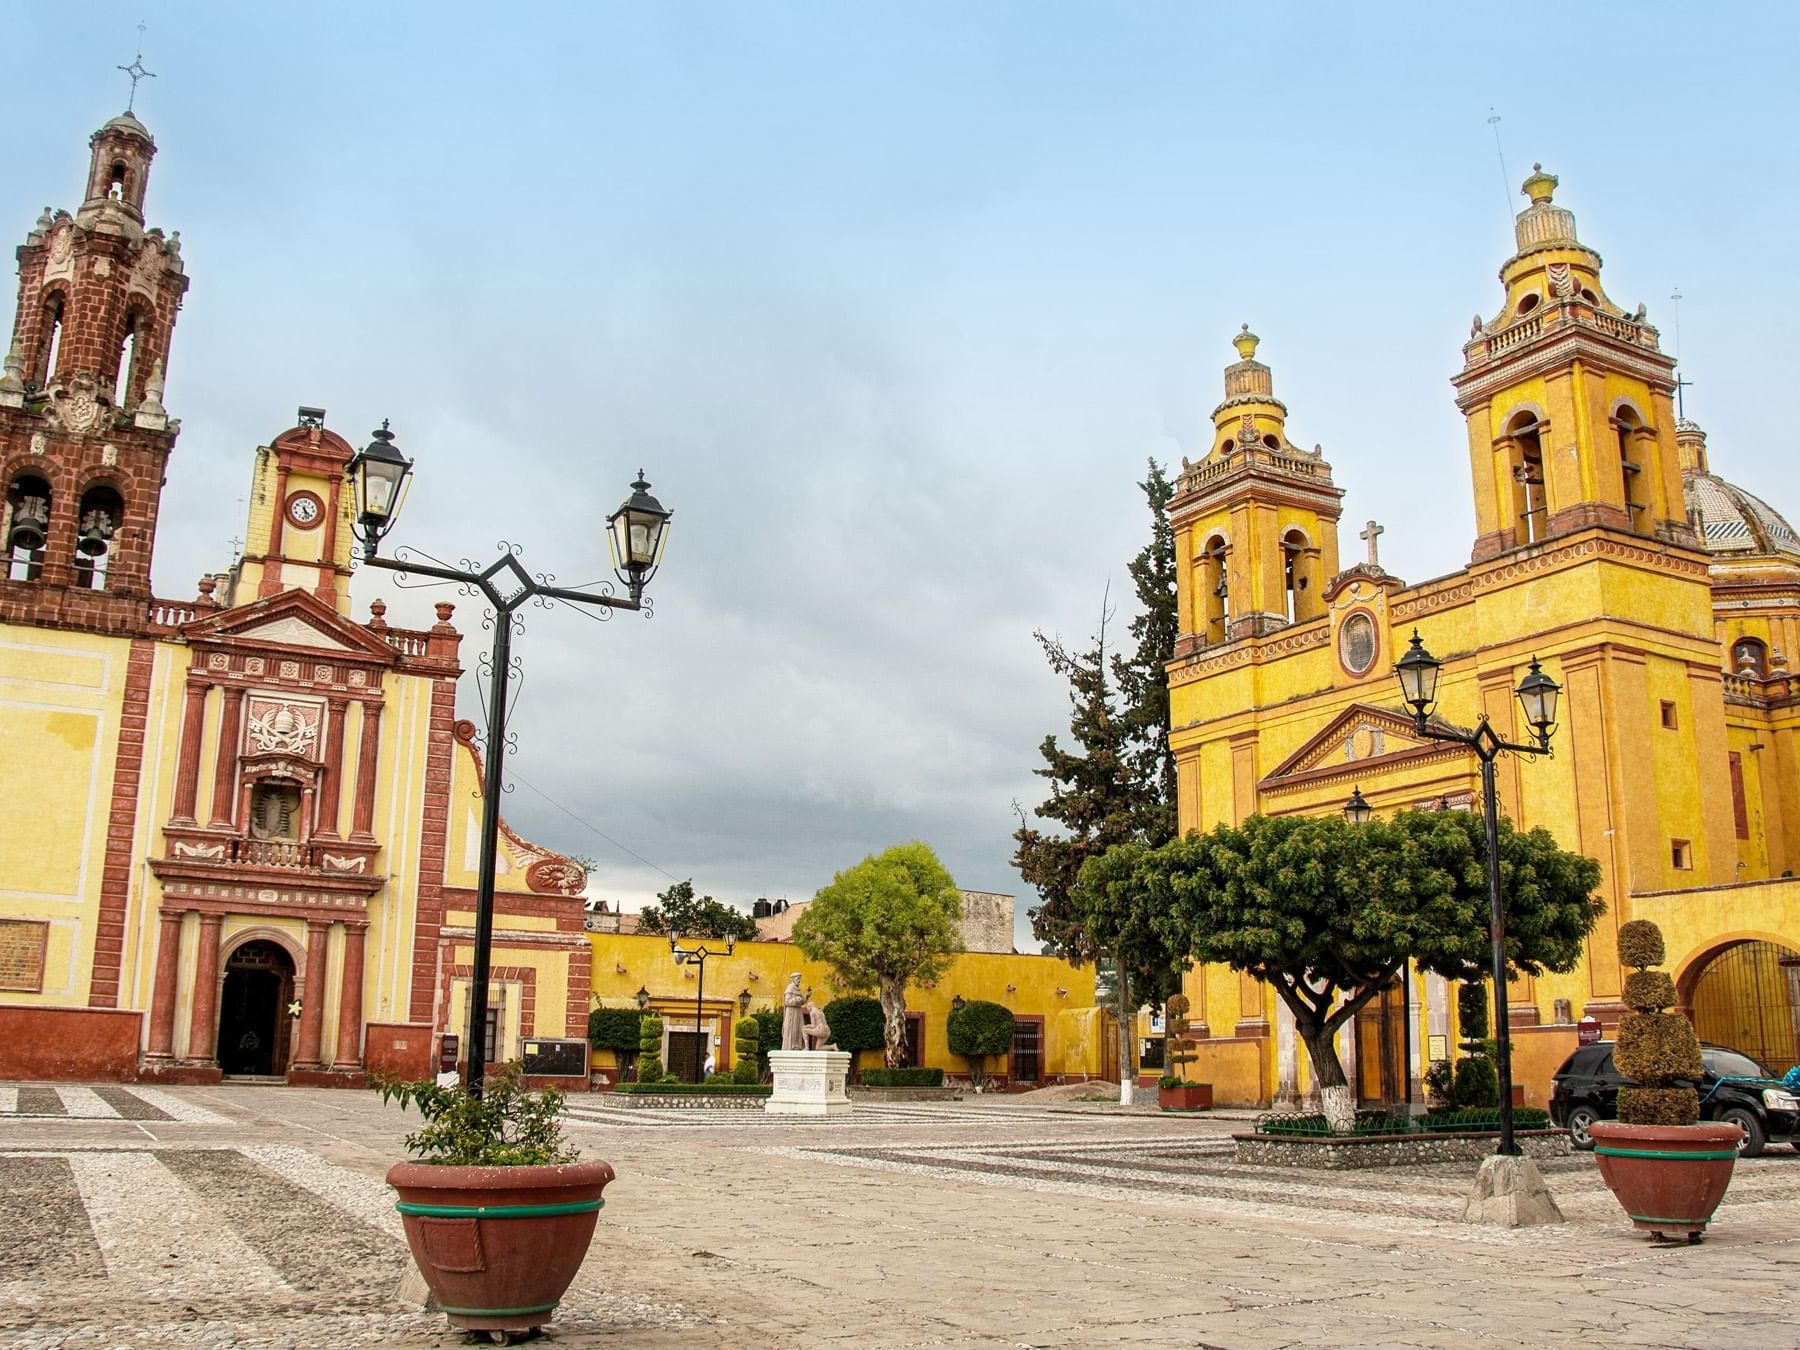 Mexican town and the church near Grand Fiesta Americana